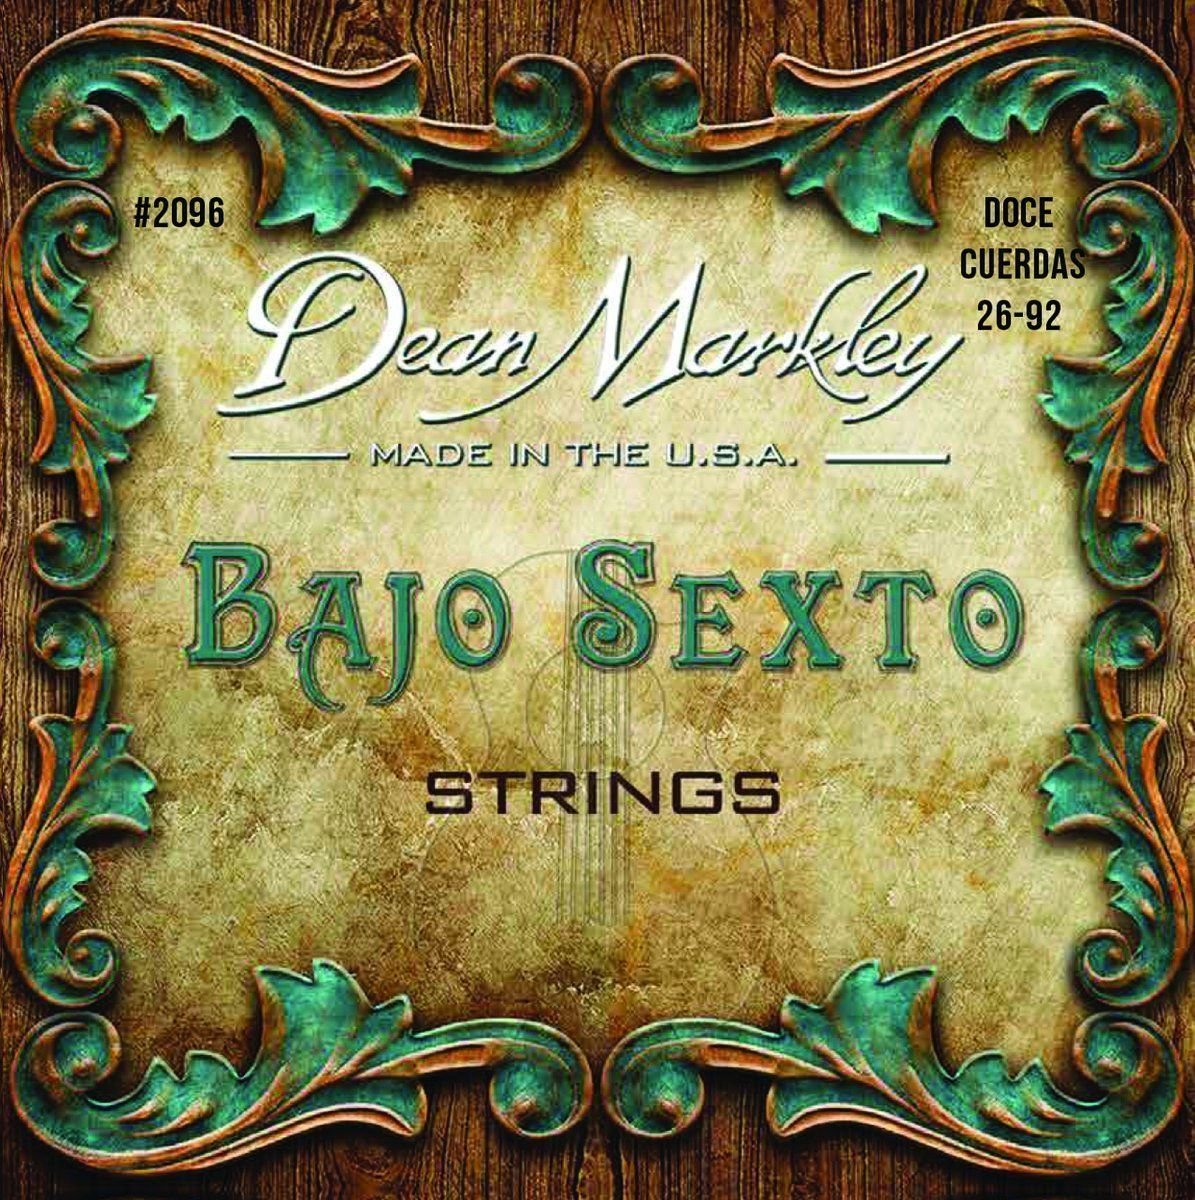 Cordes de banjos Dean Markley 2096 Bajo Sexto